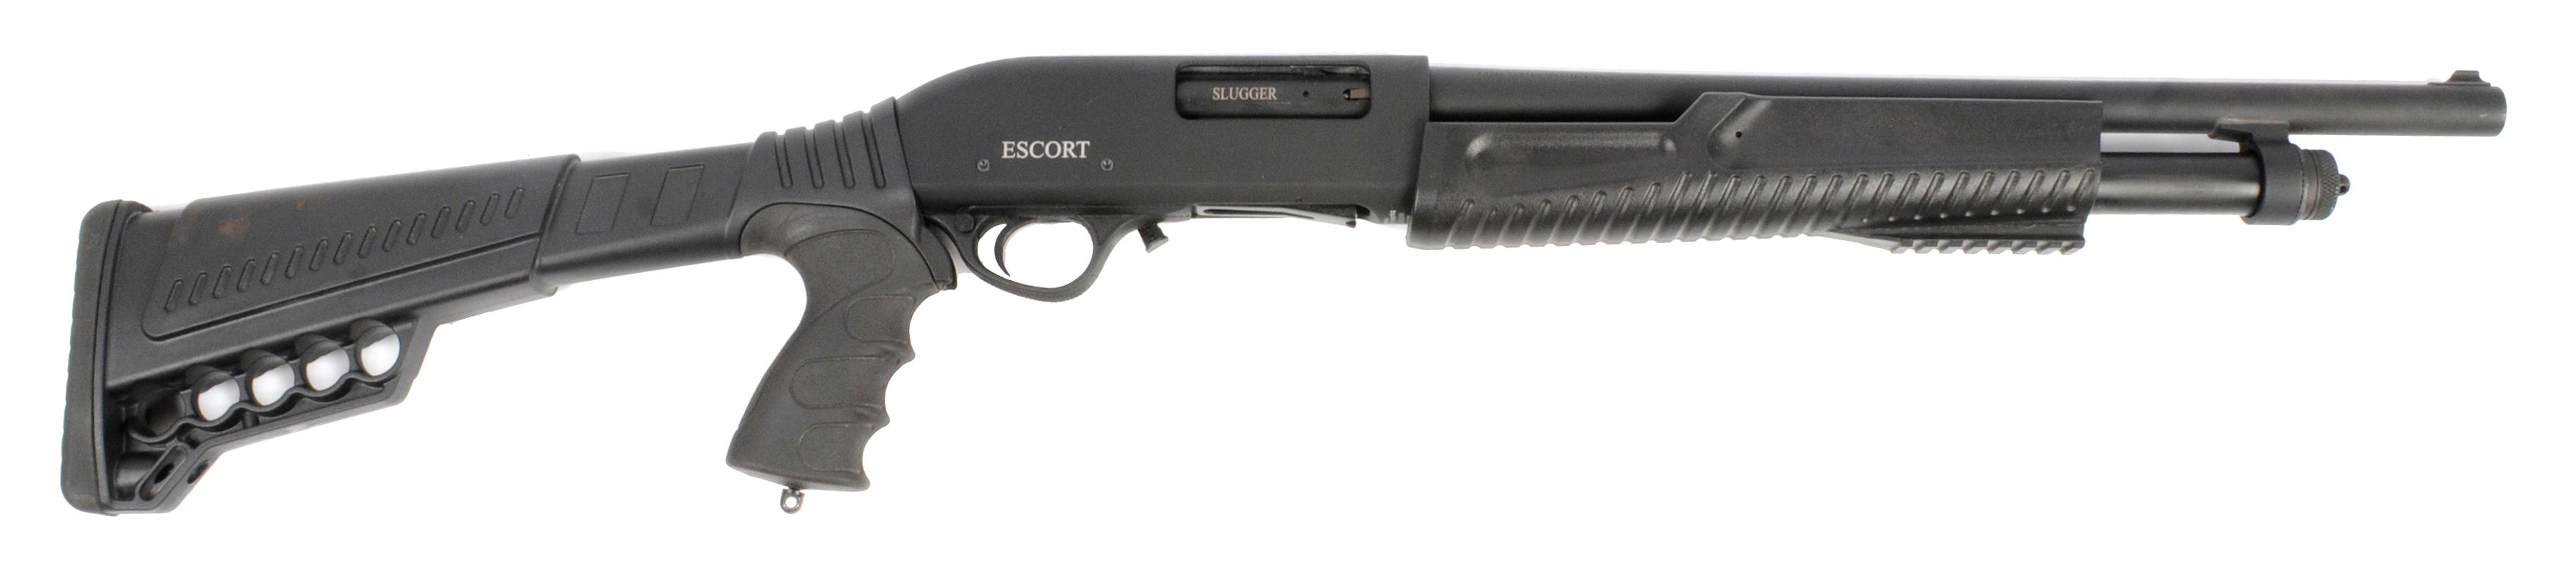 Hatsan Escort 12 Gauge Pump-action Shotgun FFL Required: 908234  (A1)